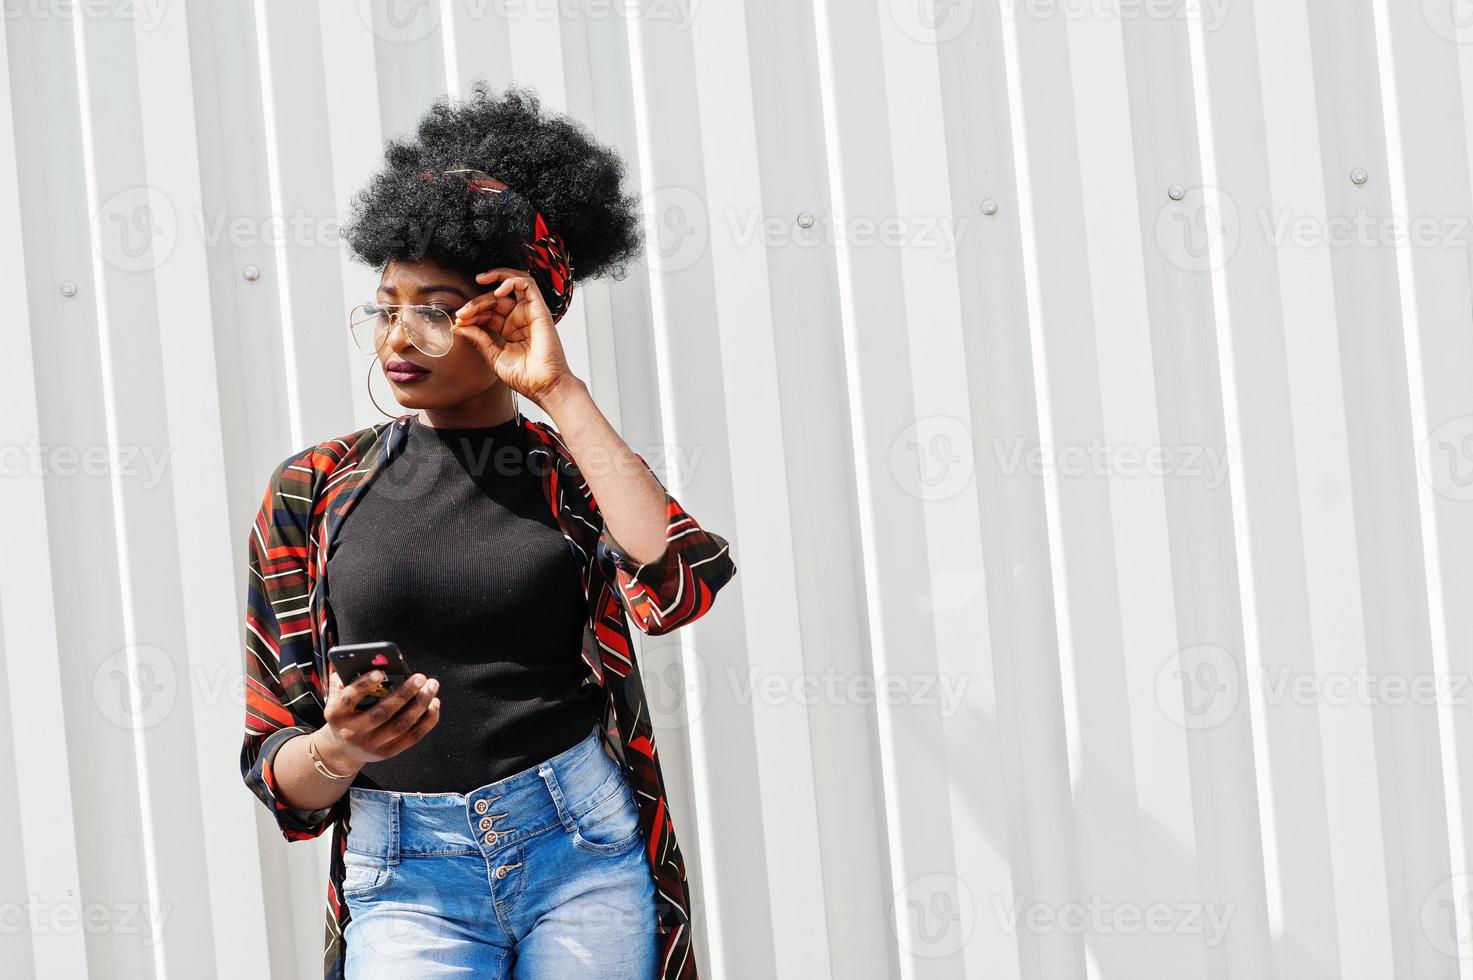 afrikanische frau mit afrohaar, in jeansshorts und brille, die mit handy in der hand gegen eine weiße stahlwand posiert. foto